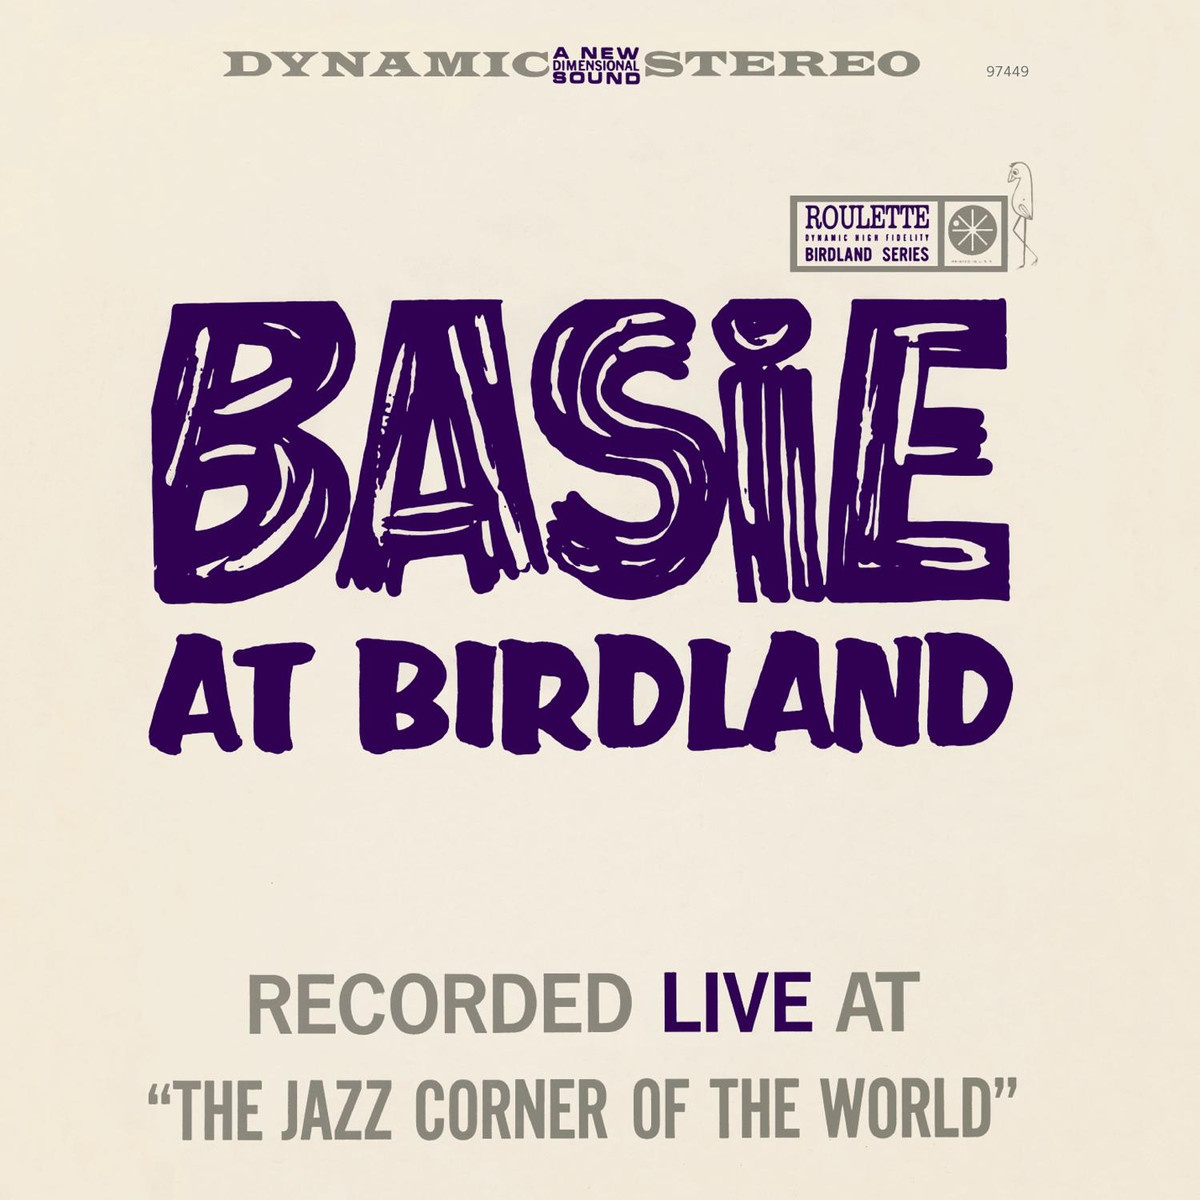 Basie (2007 Remastered Version)